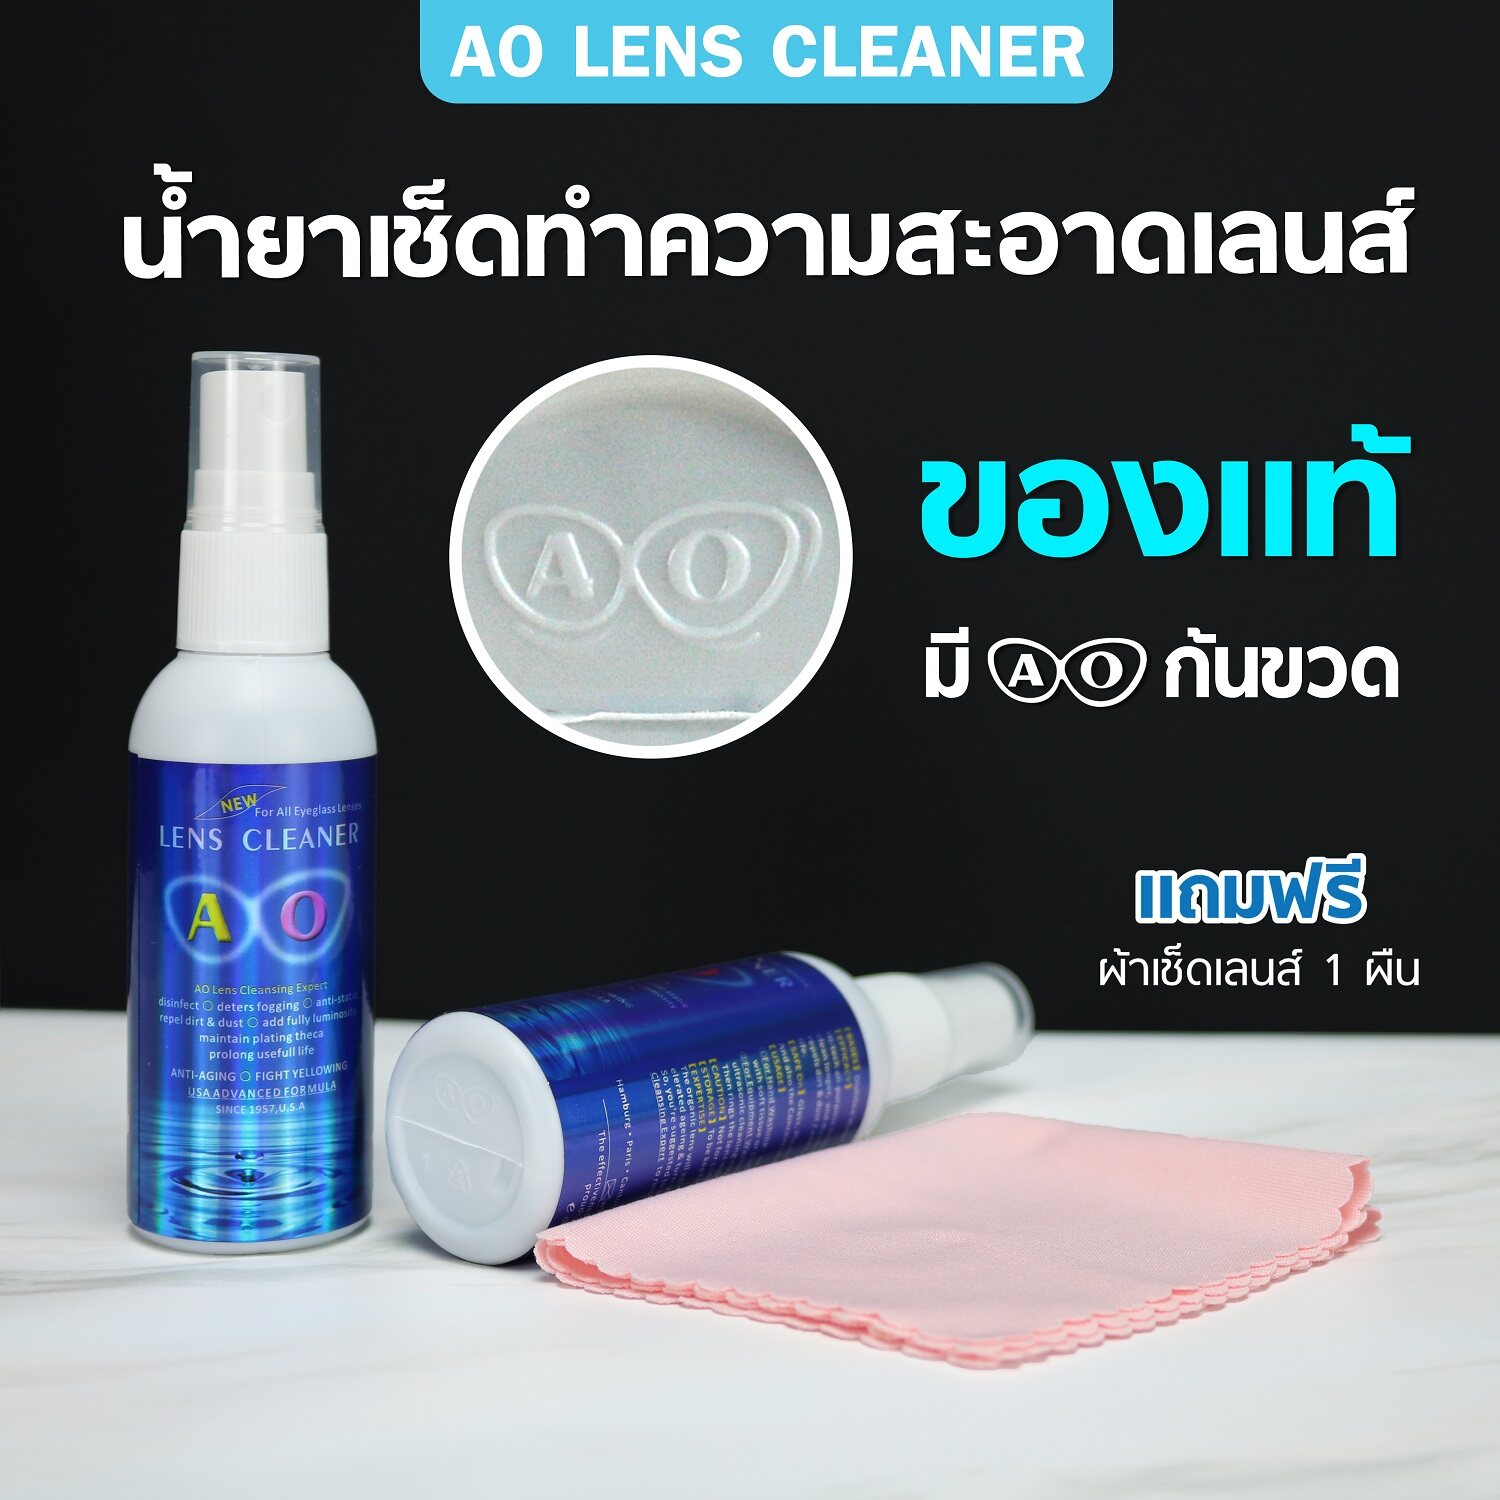 ข้อมูลเกี่ยวกับ ✨น้ำยาเช็ดเลนส์ น้ำยาเช็ดแว่น✨ ของแท้100% AO lens cleaner (แถมผ้าเช็ดเลนส์ฟรี1ผืน)ของเเท้ต้องมีตราท้ายขวด!!ทำความสะอาดเลนส์ได้ทุกชนิด! ขนาด 60 ml